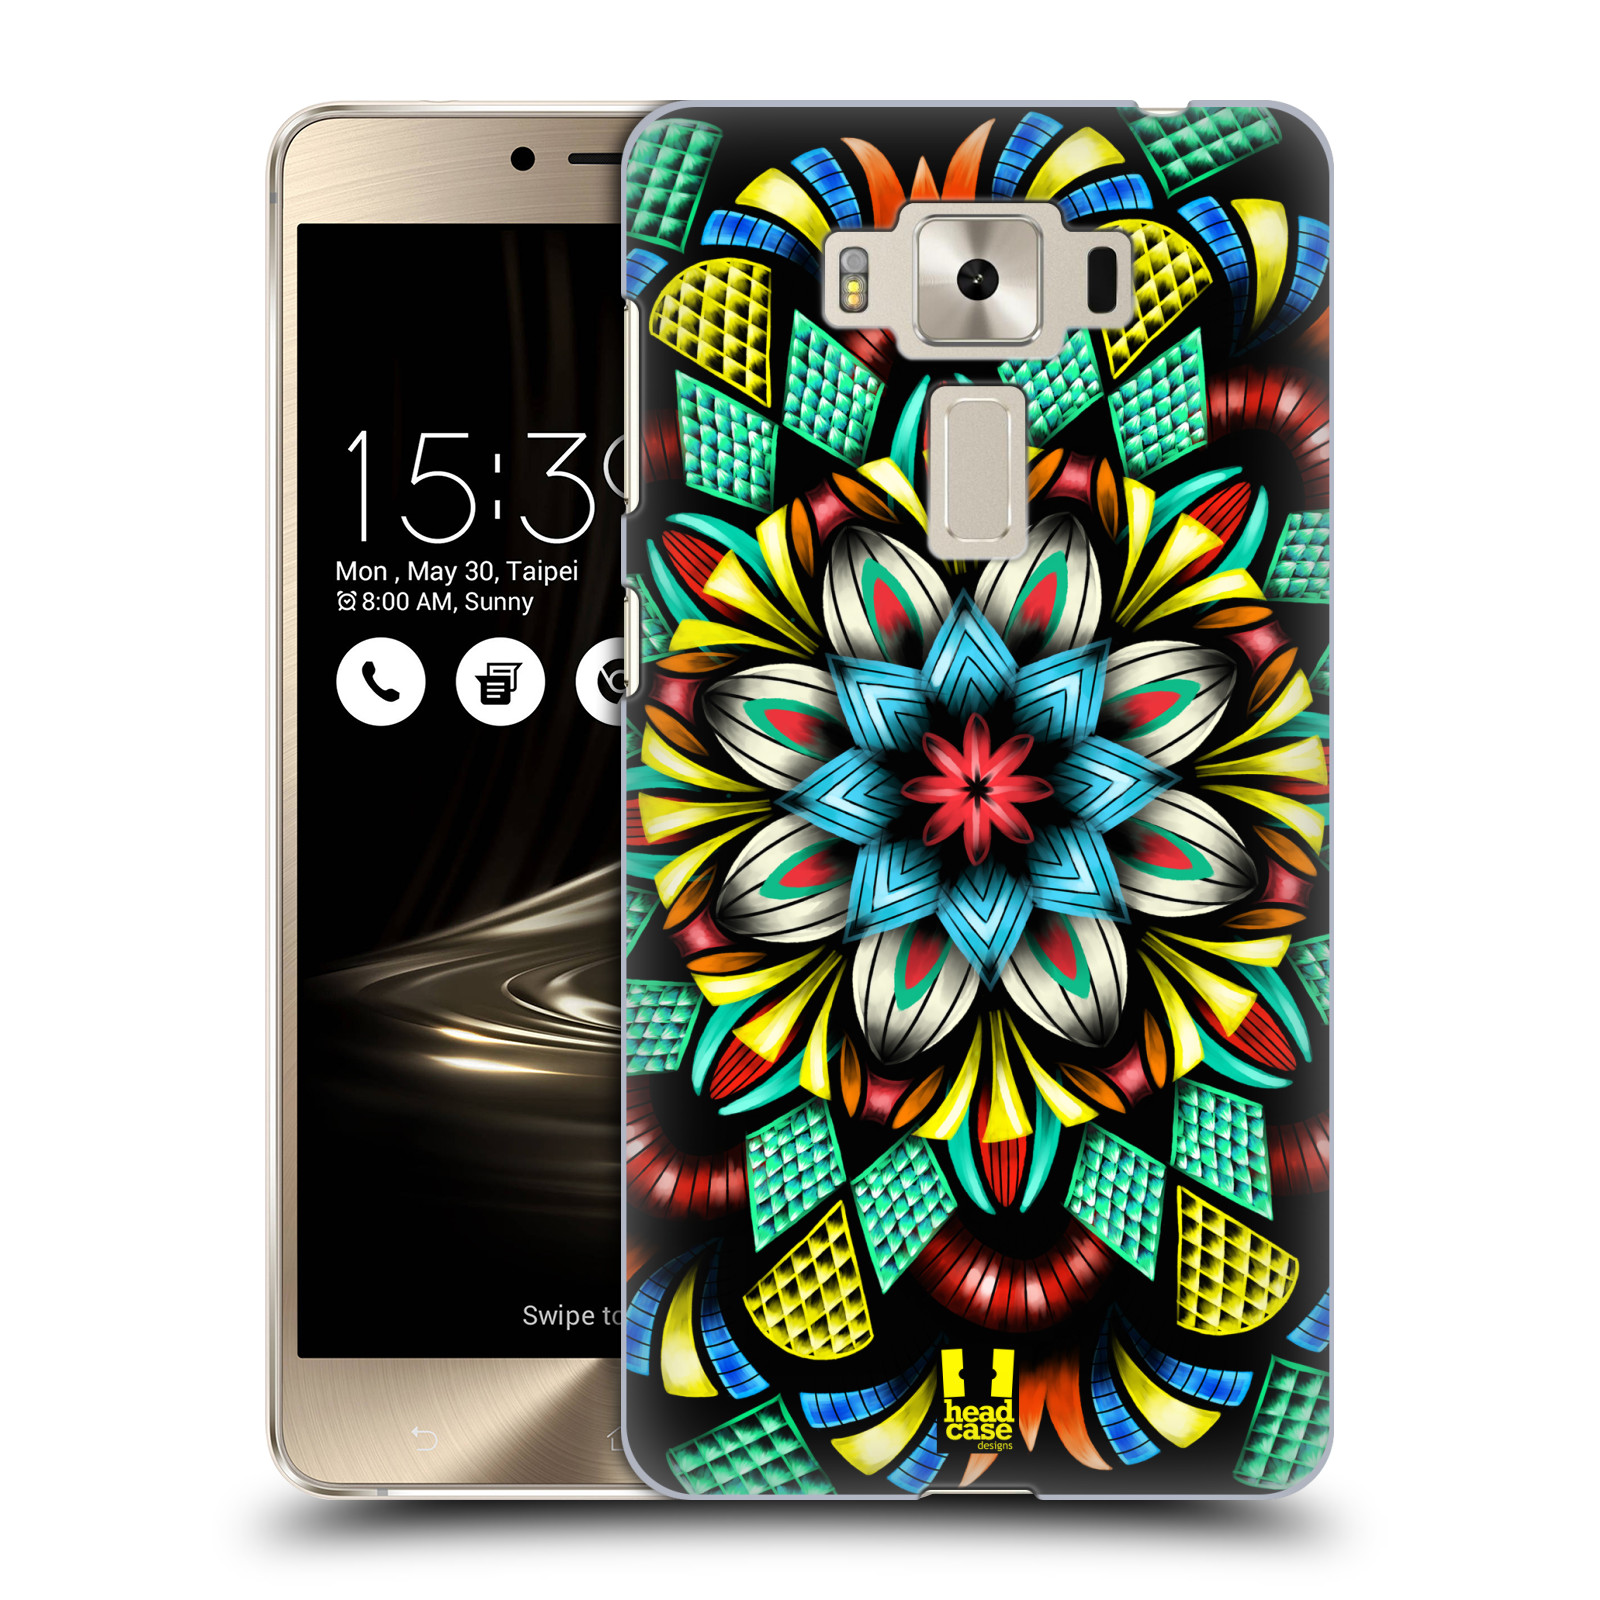 HEAD CASE plastový obal na mobil Asus Zenfone 3 DELUXE ZS550KL vzor Indie Mandala kaleidoskop barevný vzor TRADIČNÍ